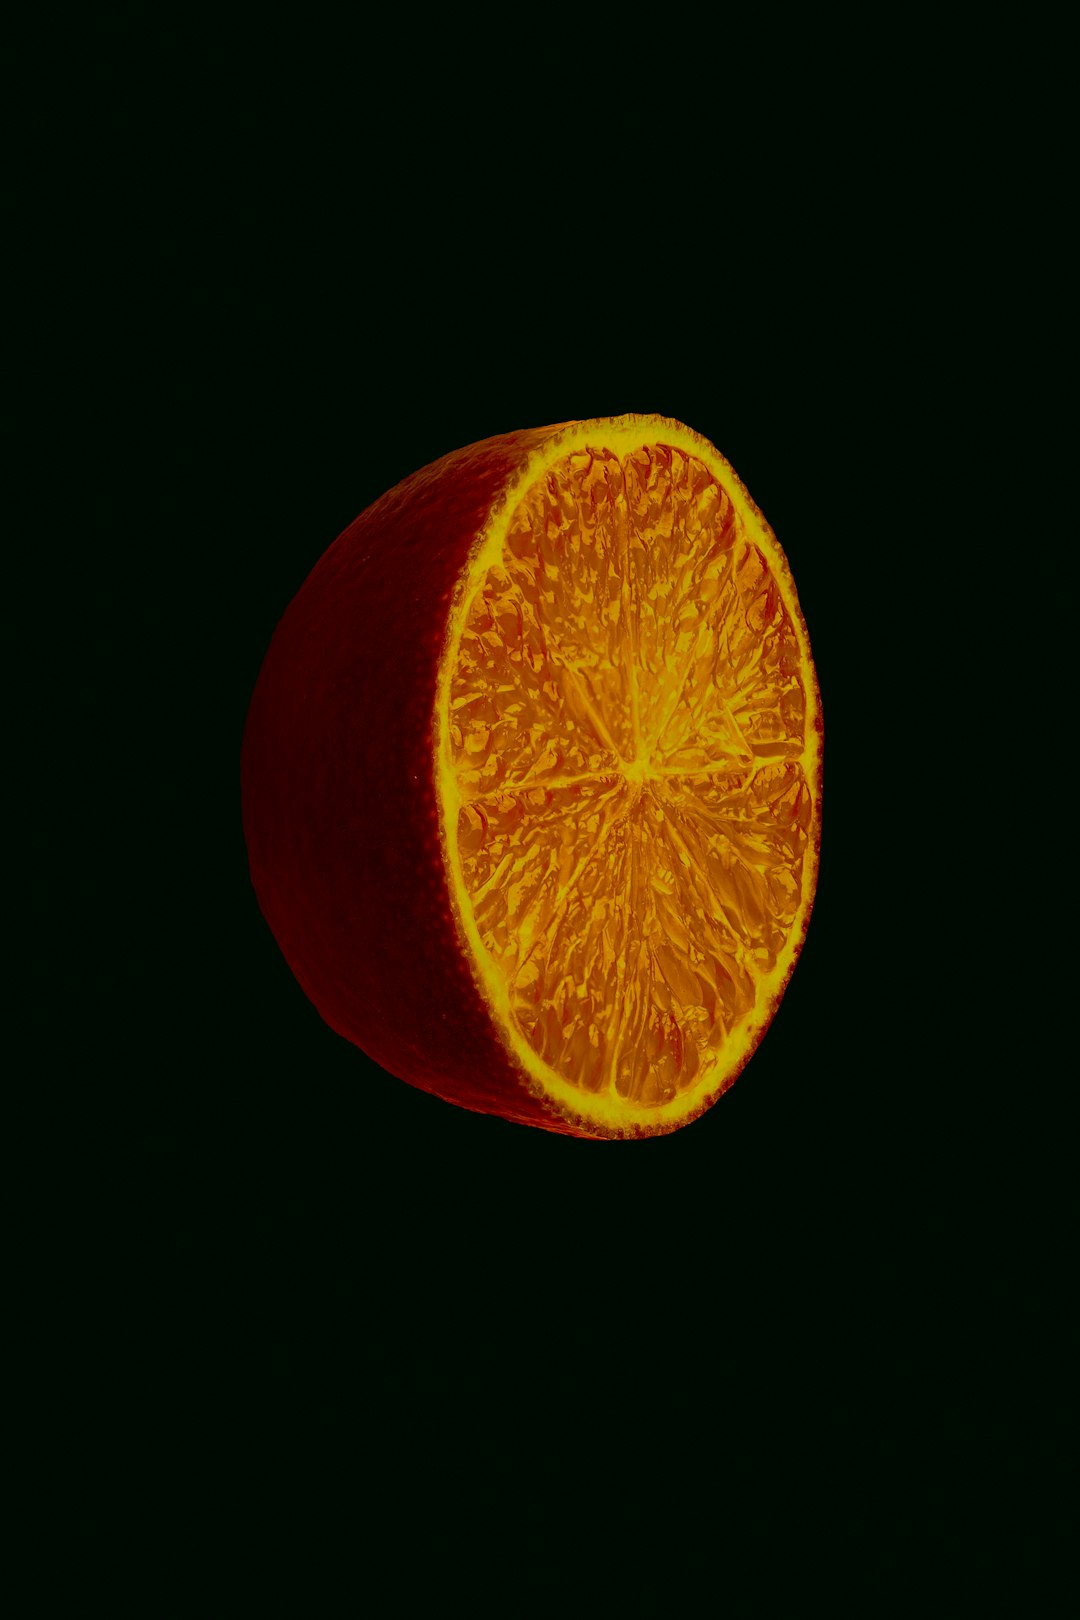 orange fruit with black background